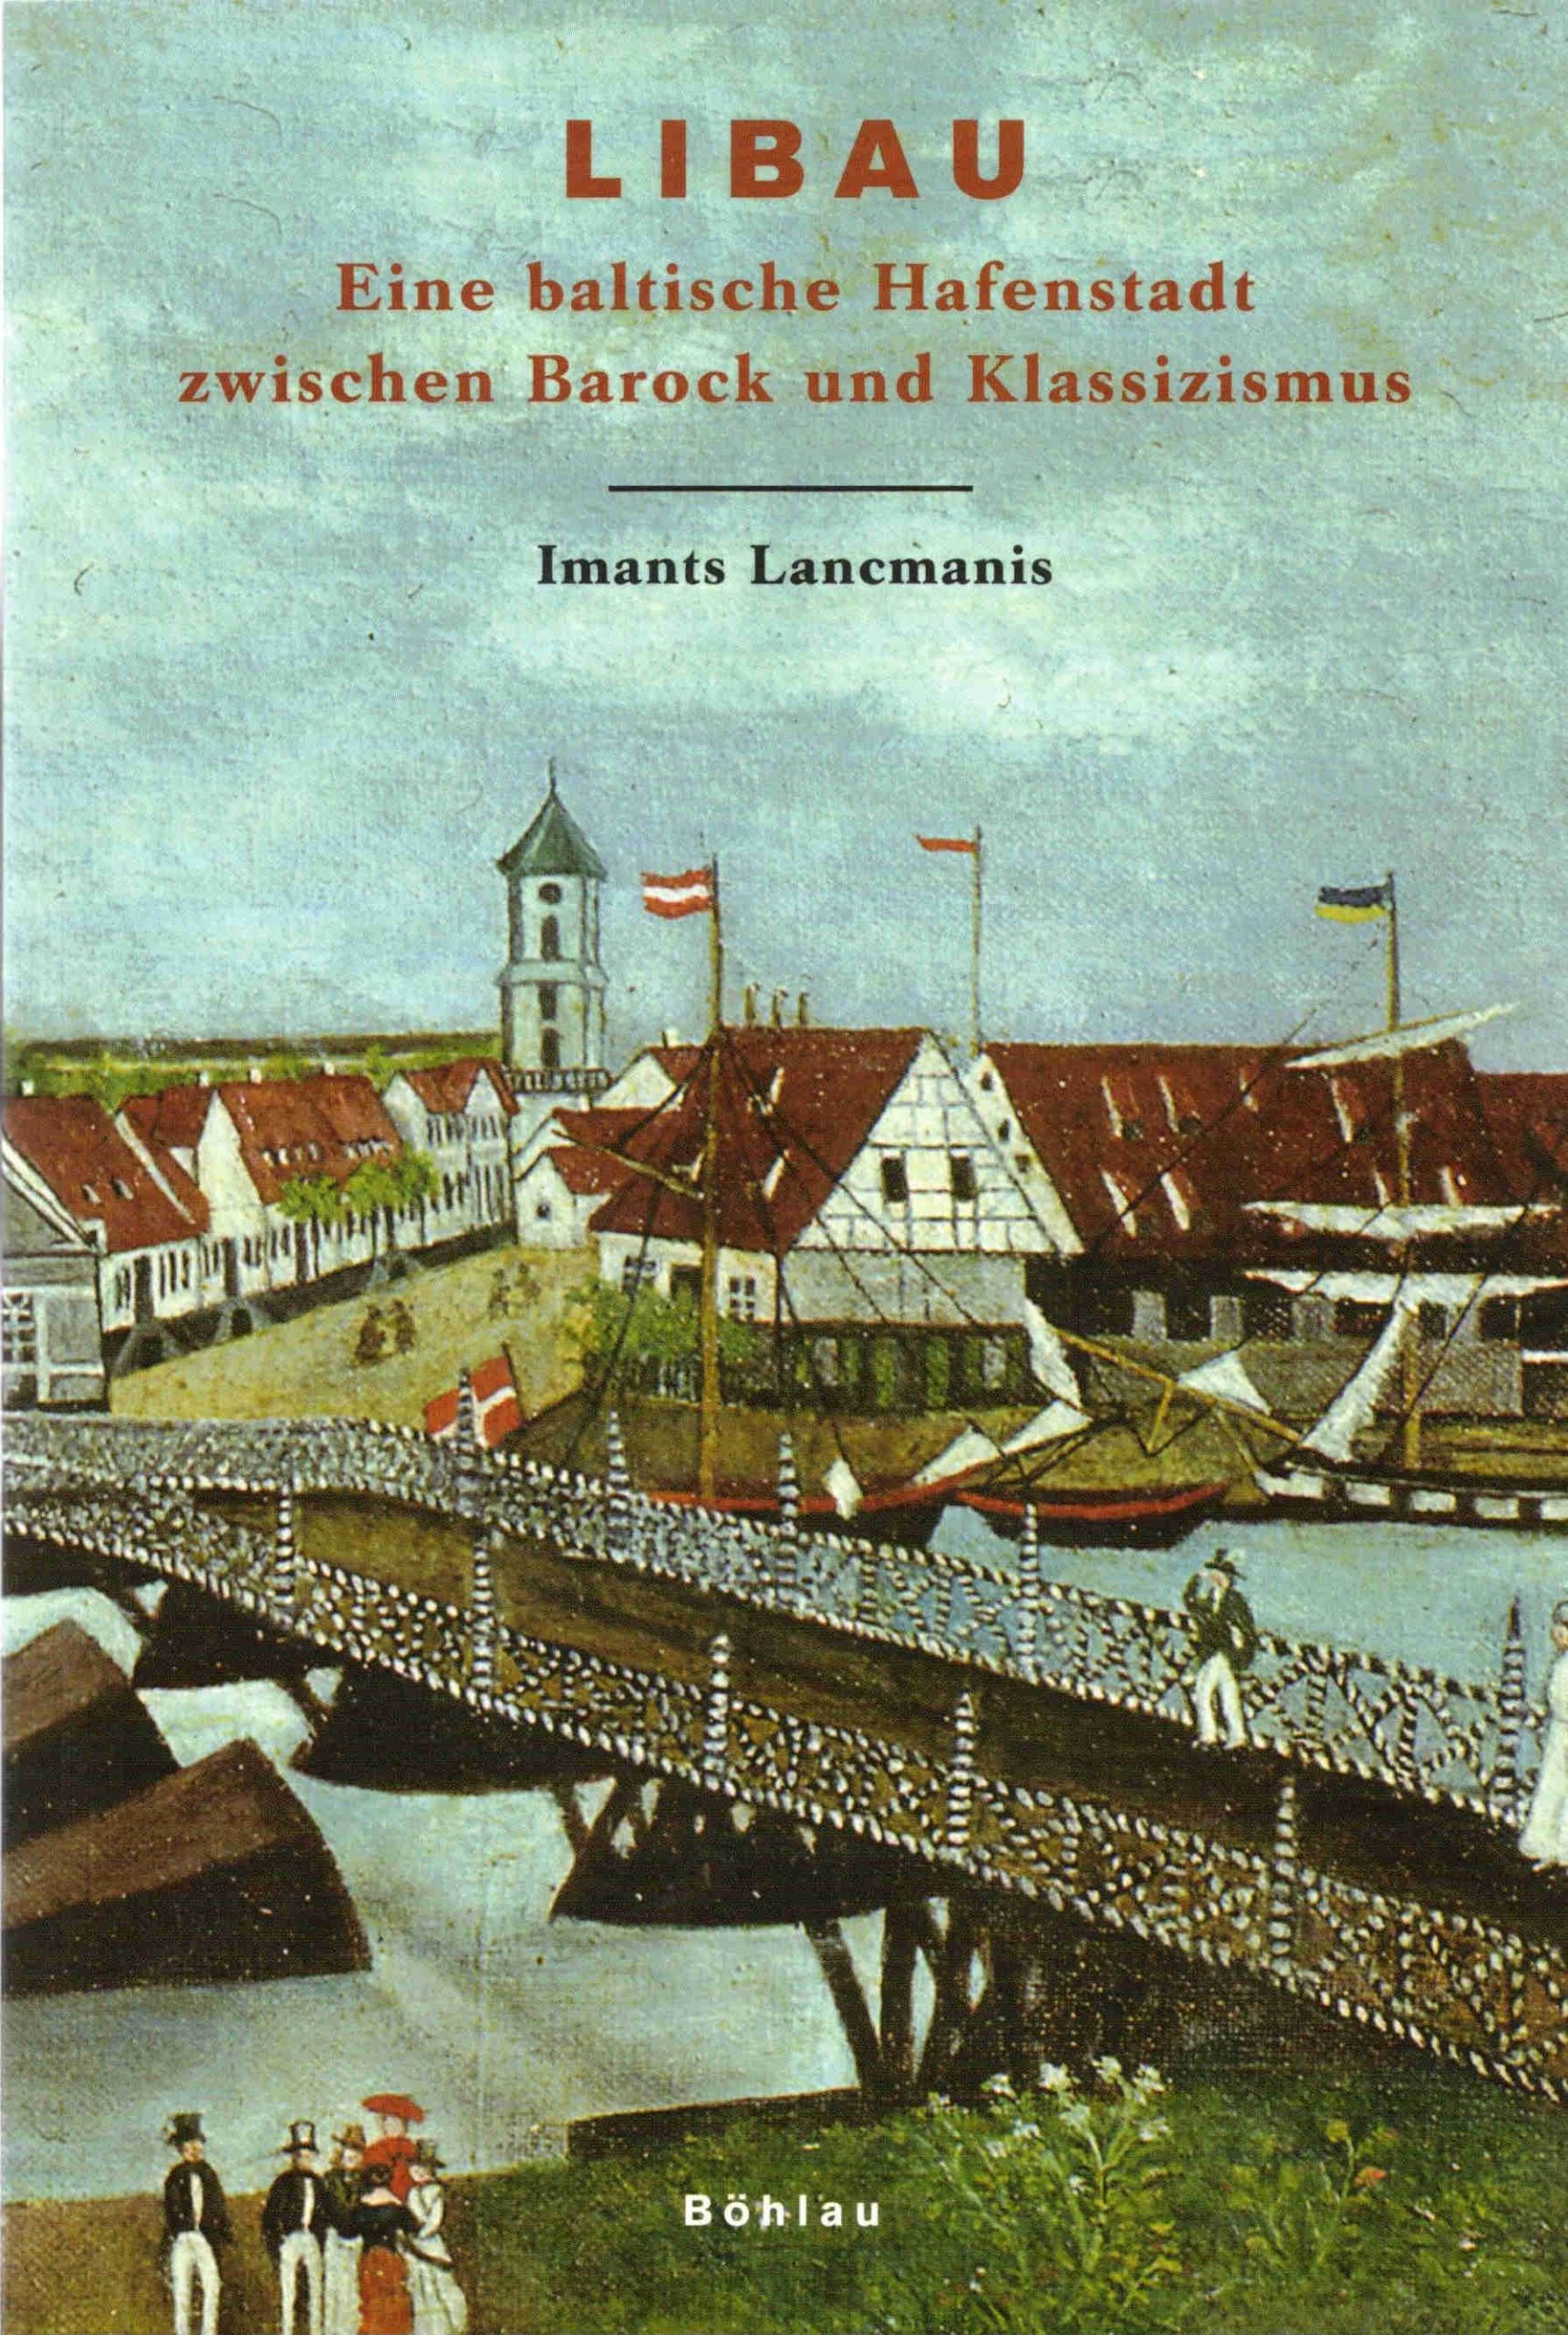 Band 03: Libau. Eine baltische Hafenstadt zwischen Barock und Klassizismus